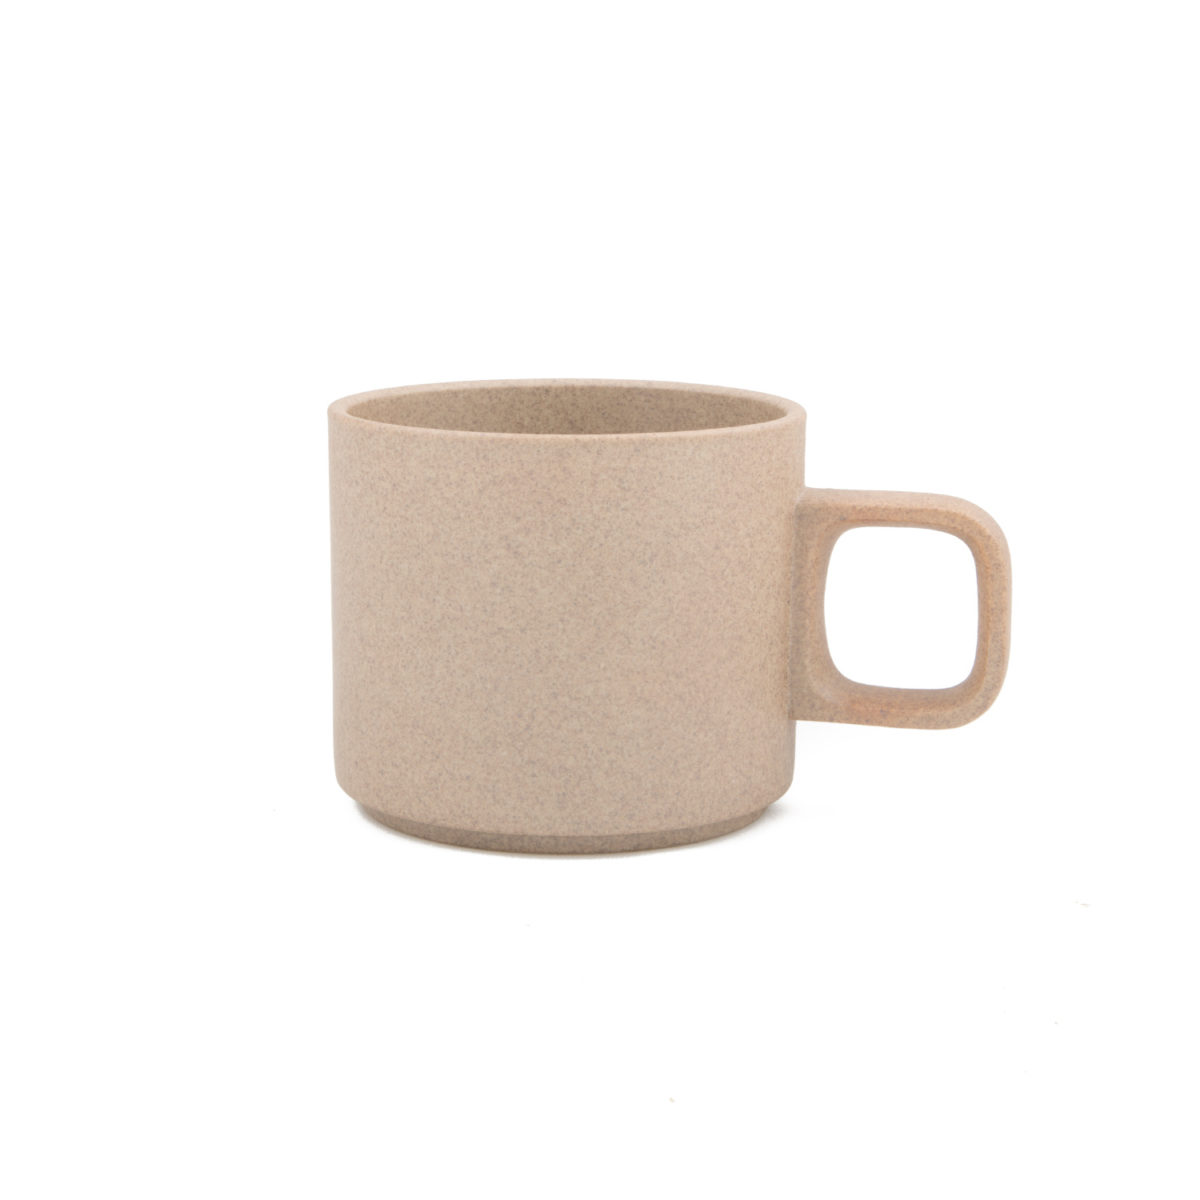 A ceramic mug